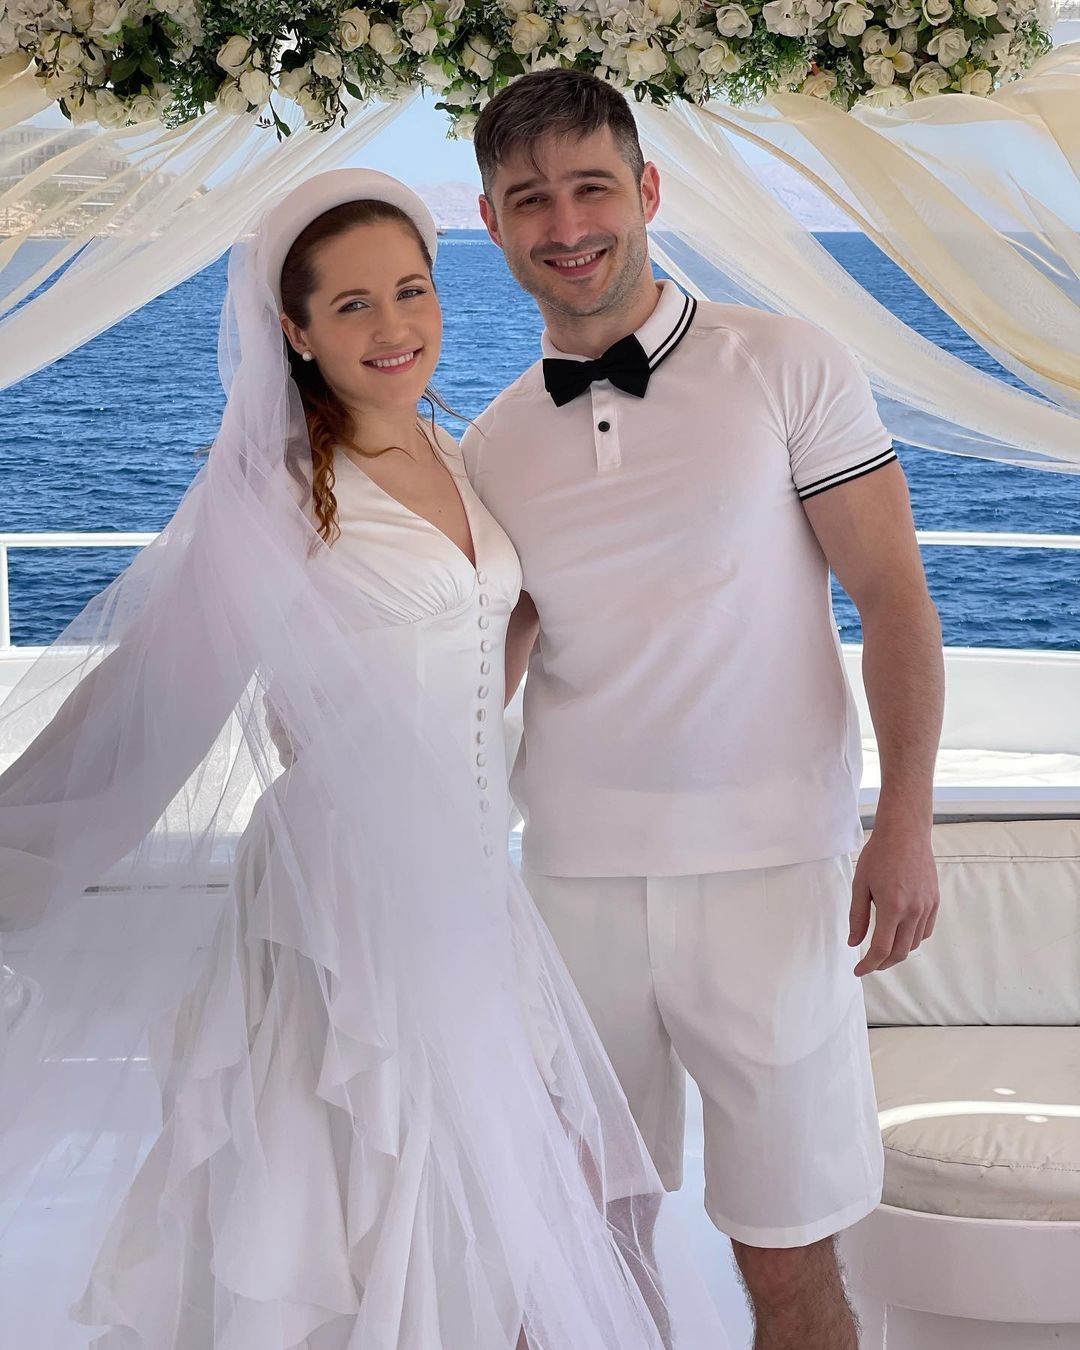 Наталка Денисенко и Андрей Фединчик сыграли четвертую свадьбу